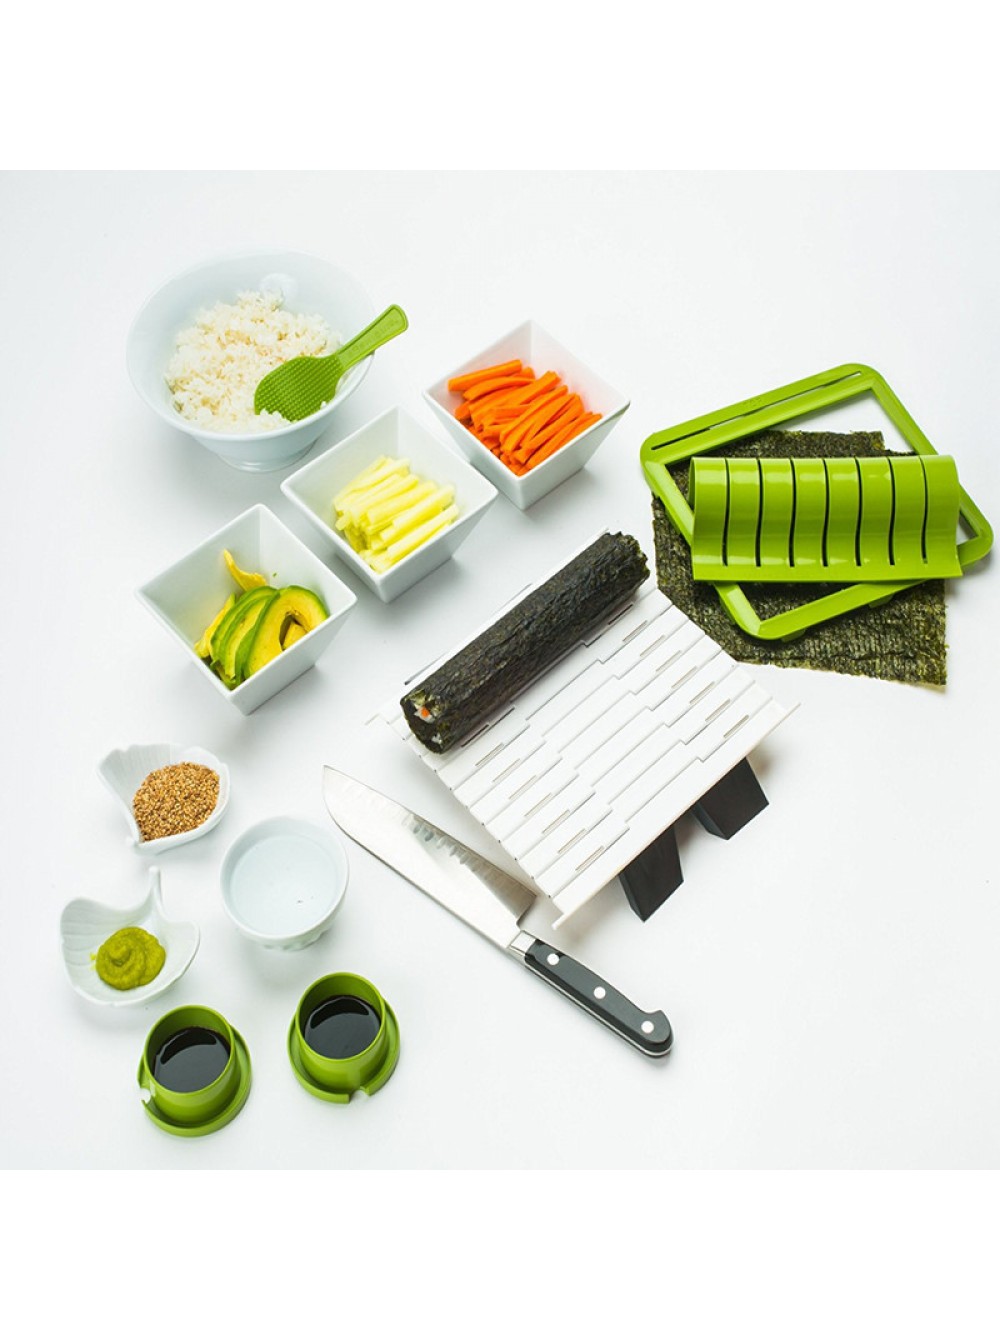 Как пользоваться набор для суши и роллов фото 45